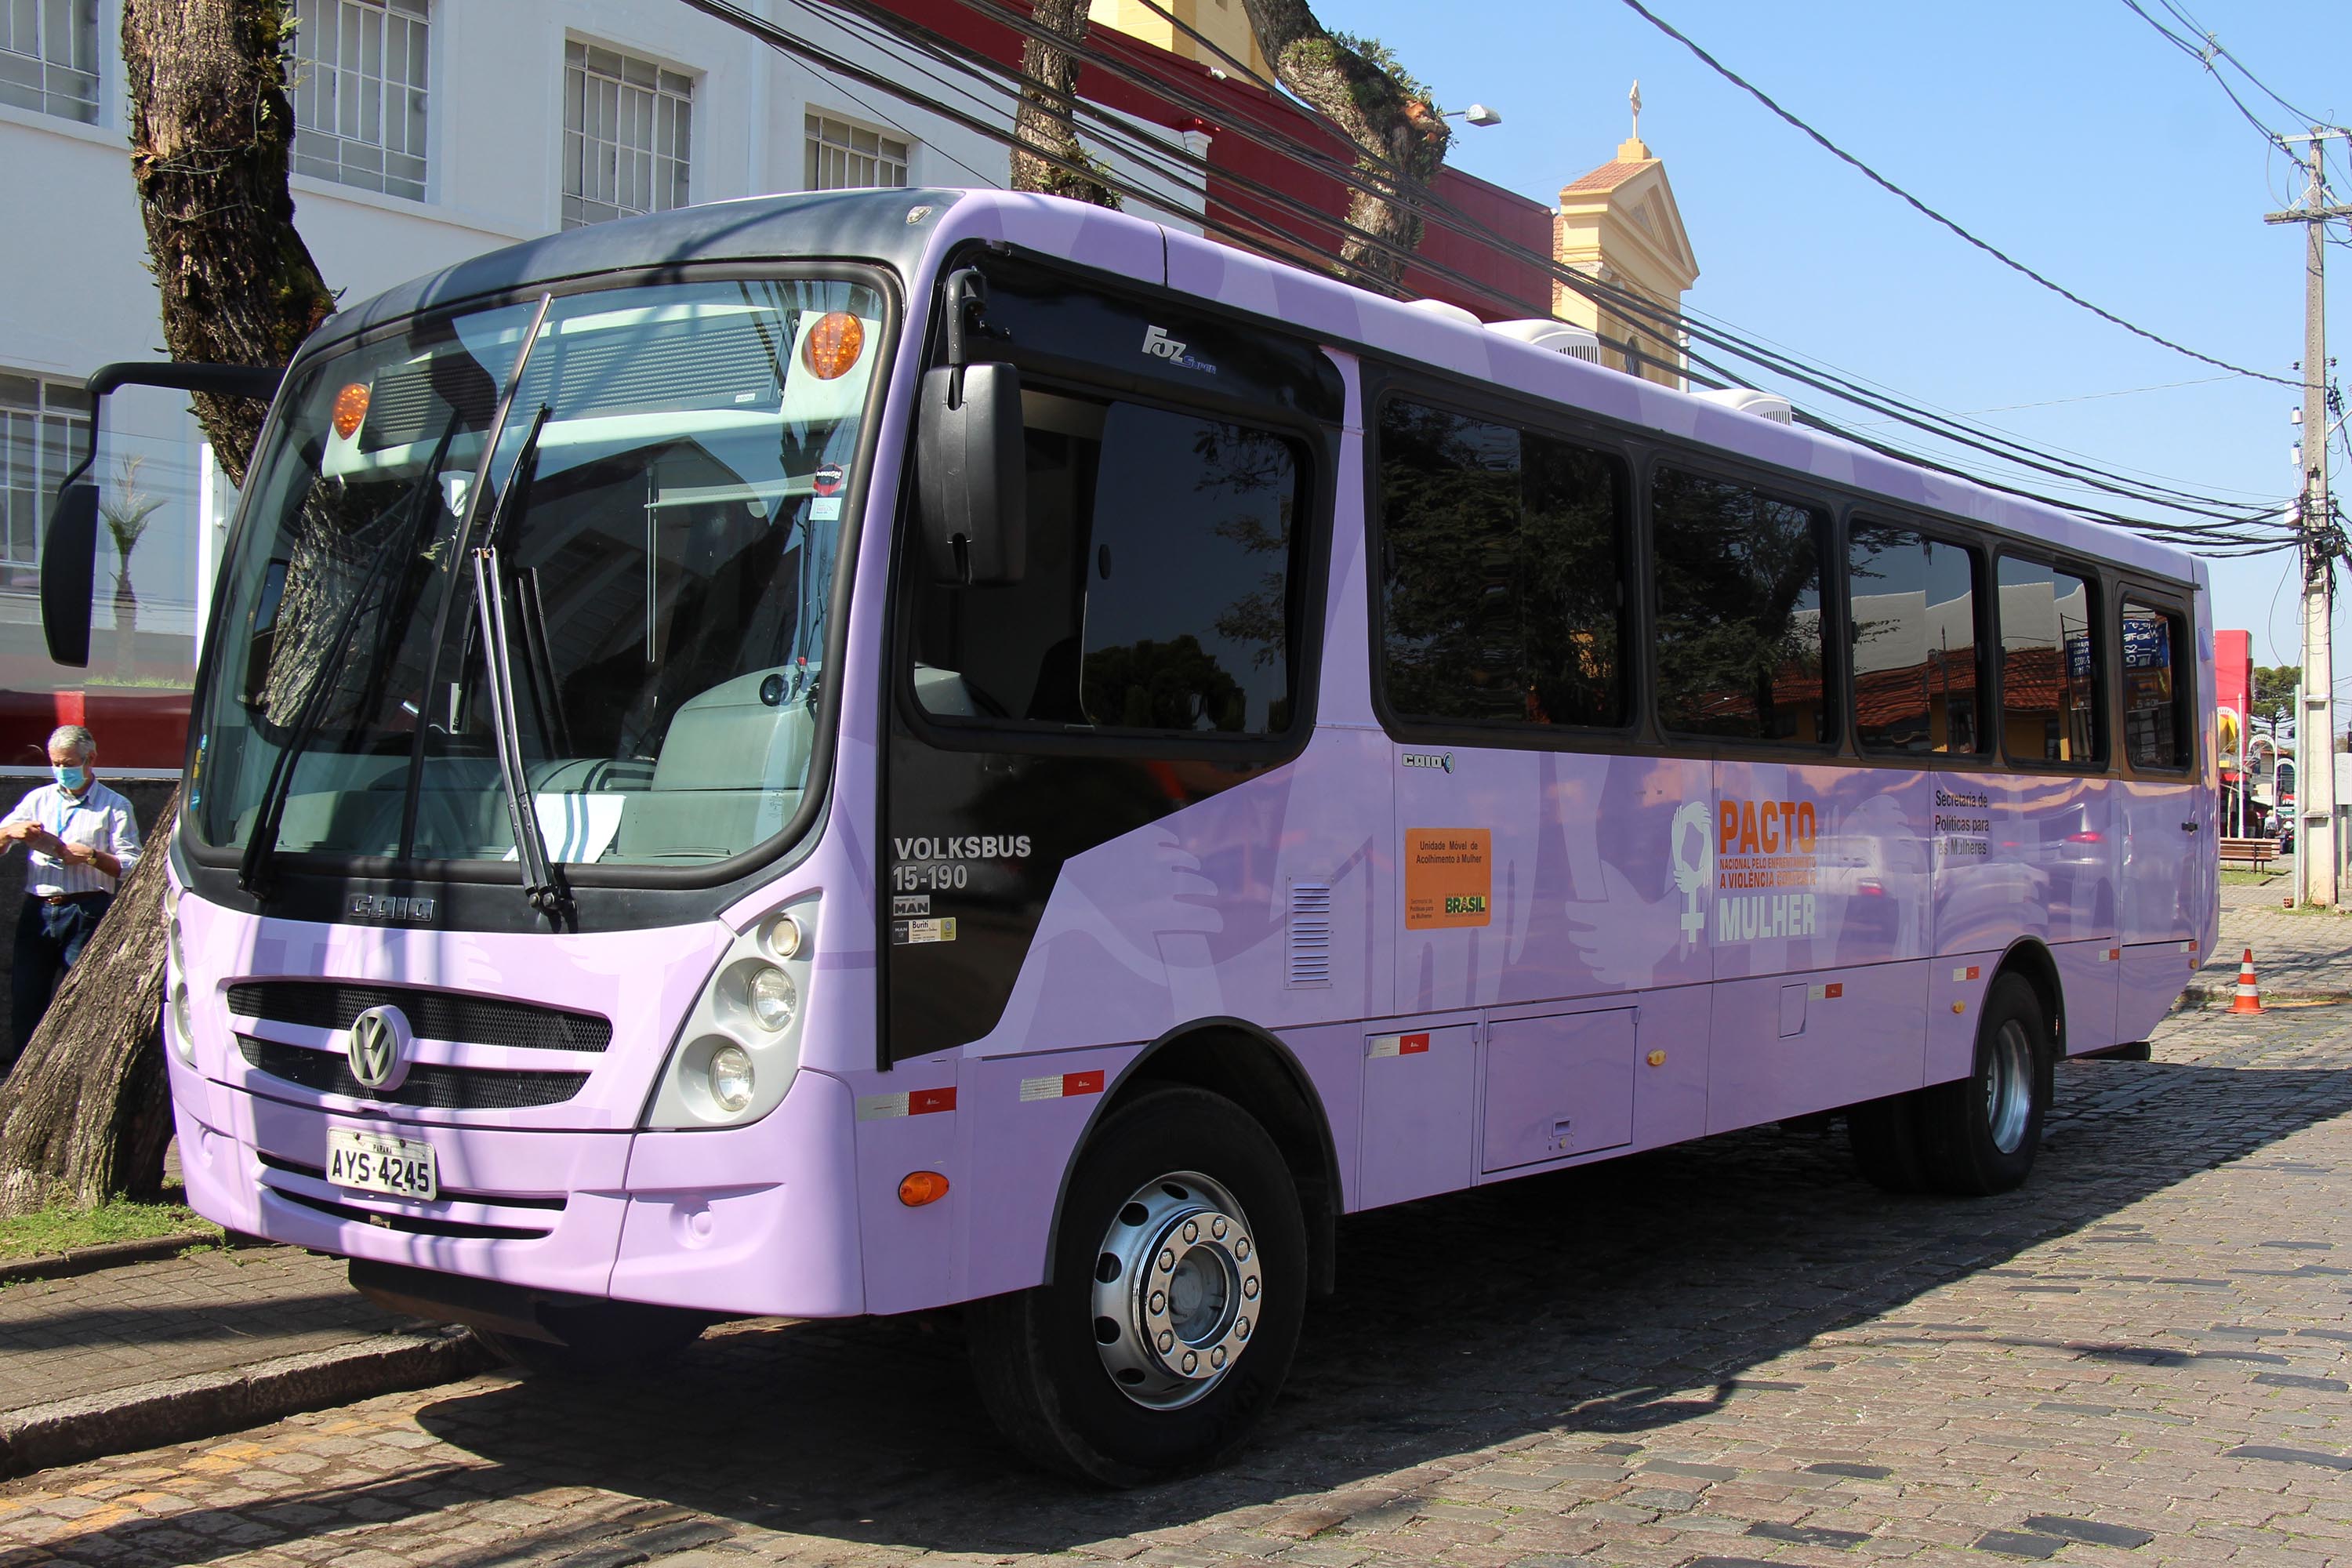  Em março, Ônibus Lilás da Secretaria de Justiça, Família e Trabalho vai levar para 6 municípios atendimento e orientação às mulheres